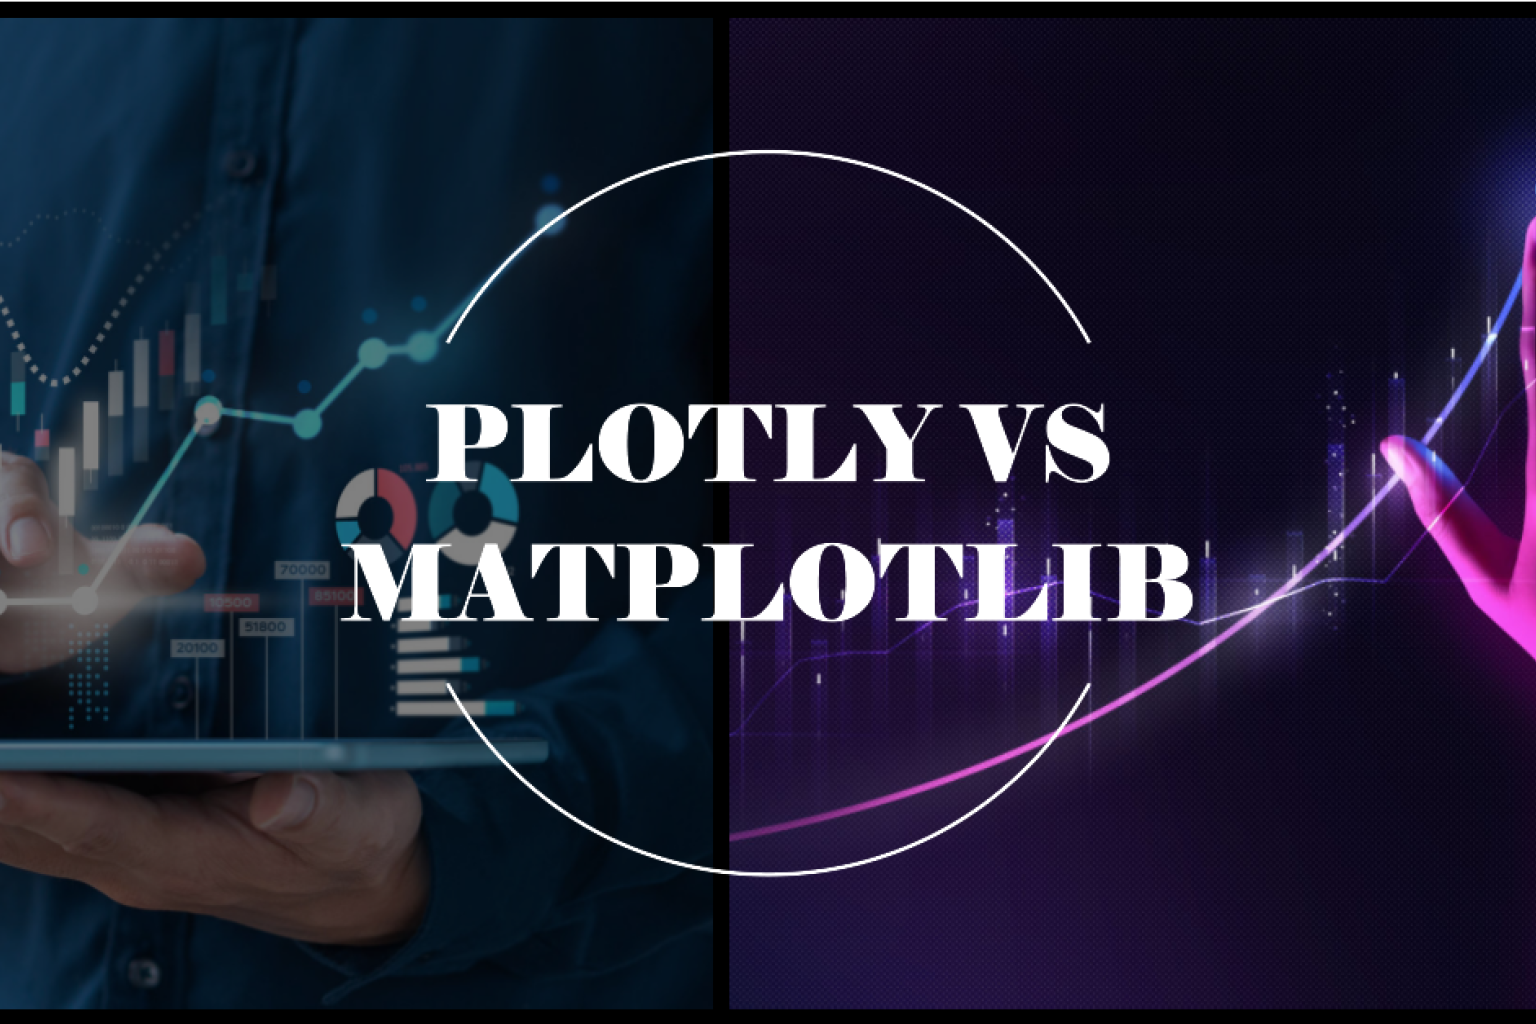 두 가장 인기 있는 Python 데이터 시각화 도구인 Plotly와 Matplotlib의 상세한 비교, 예시와 코드 스니펫을 포함한 분석입니다.